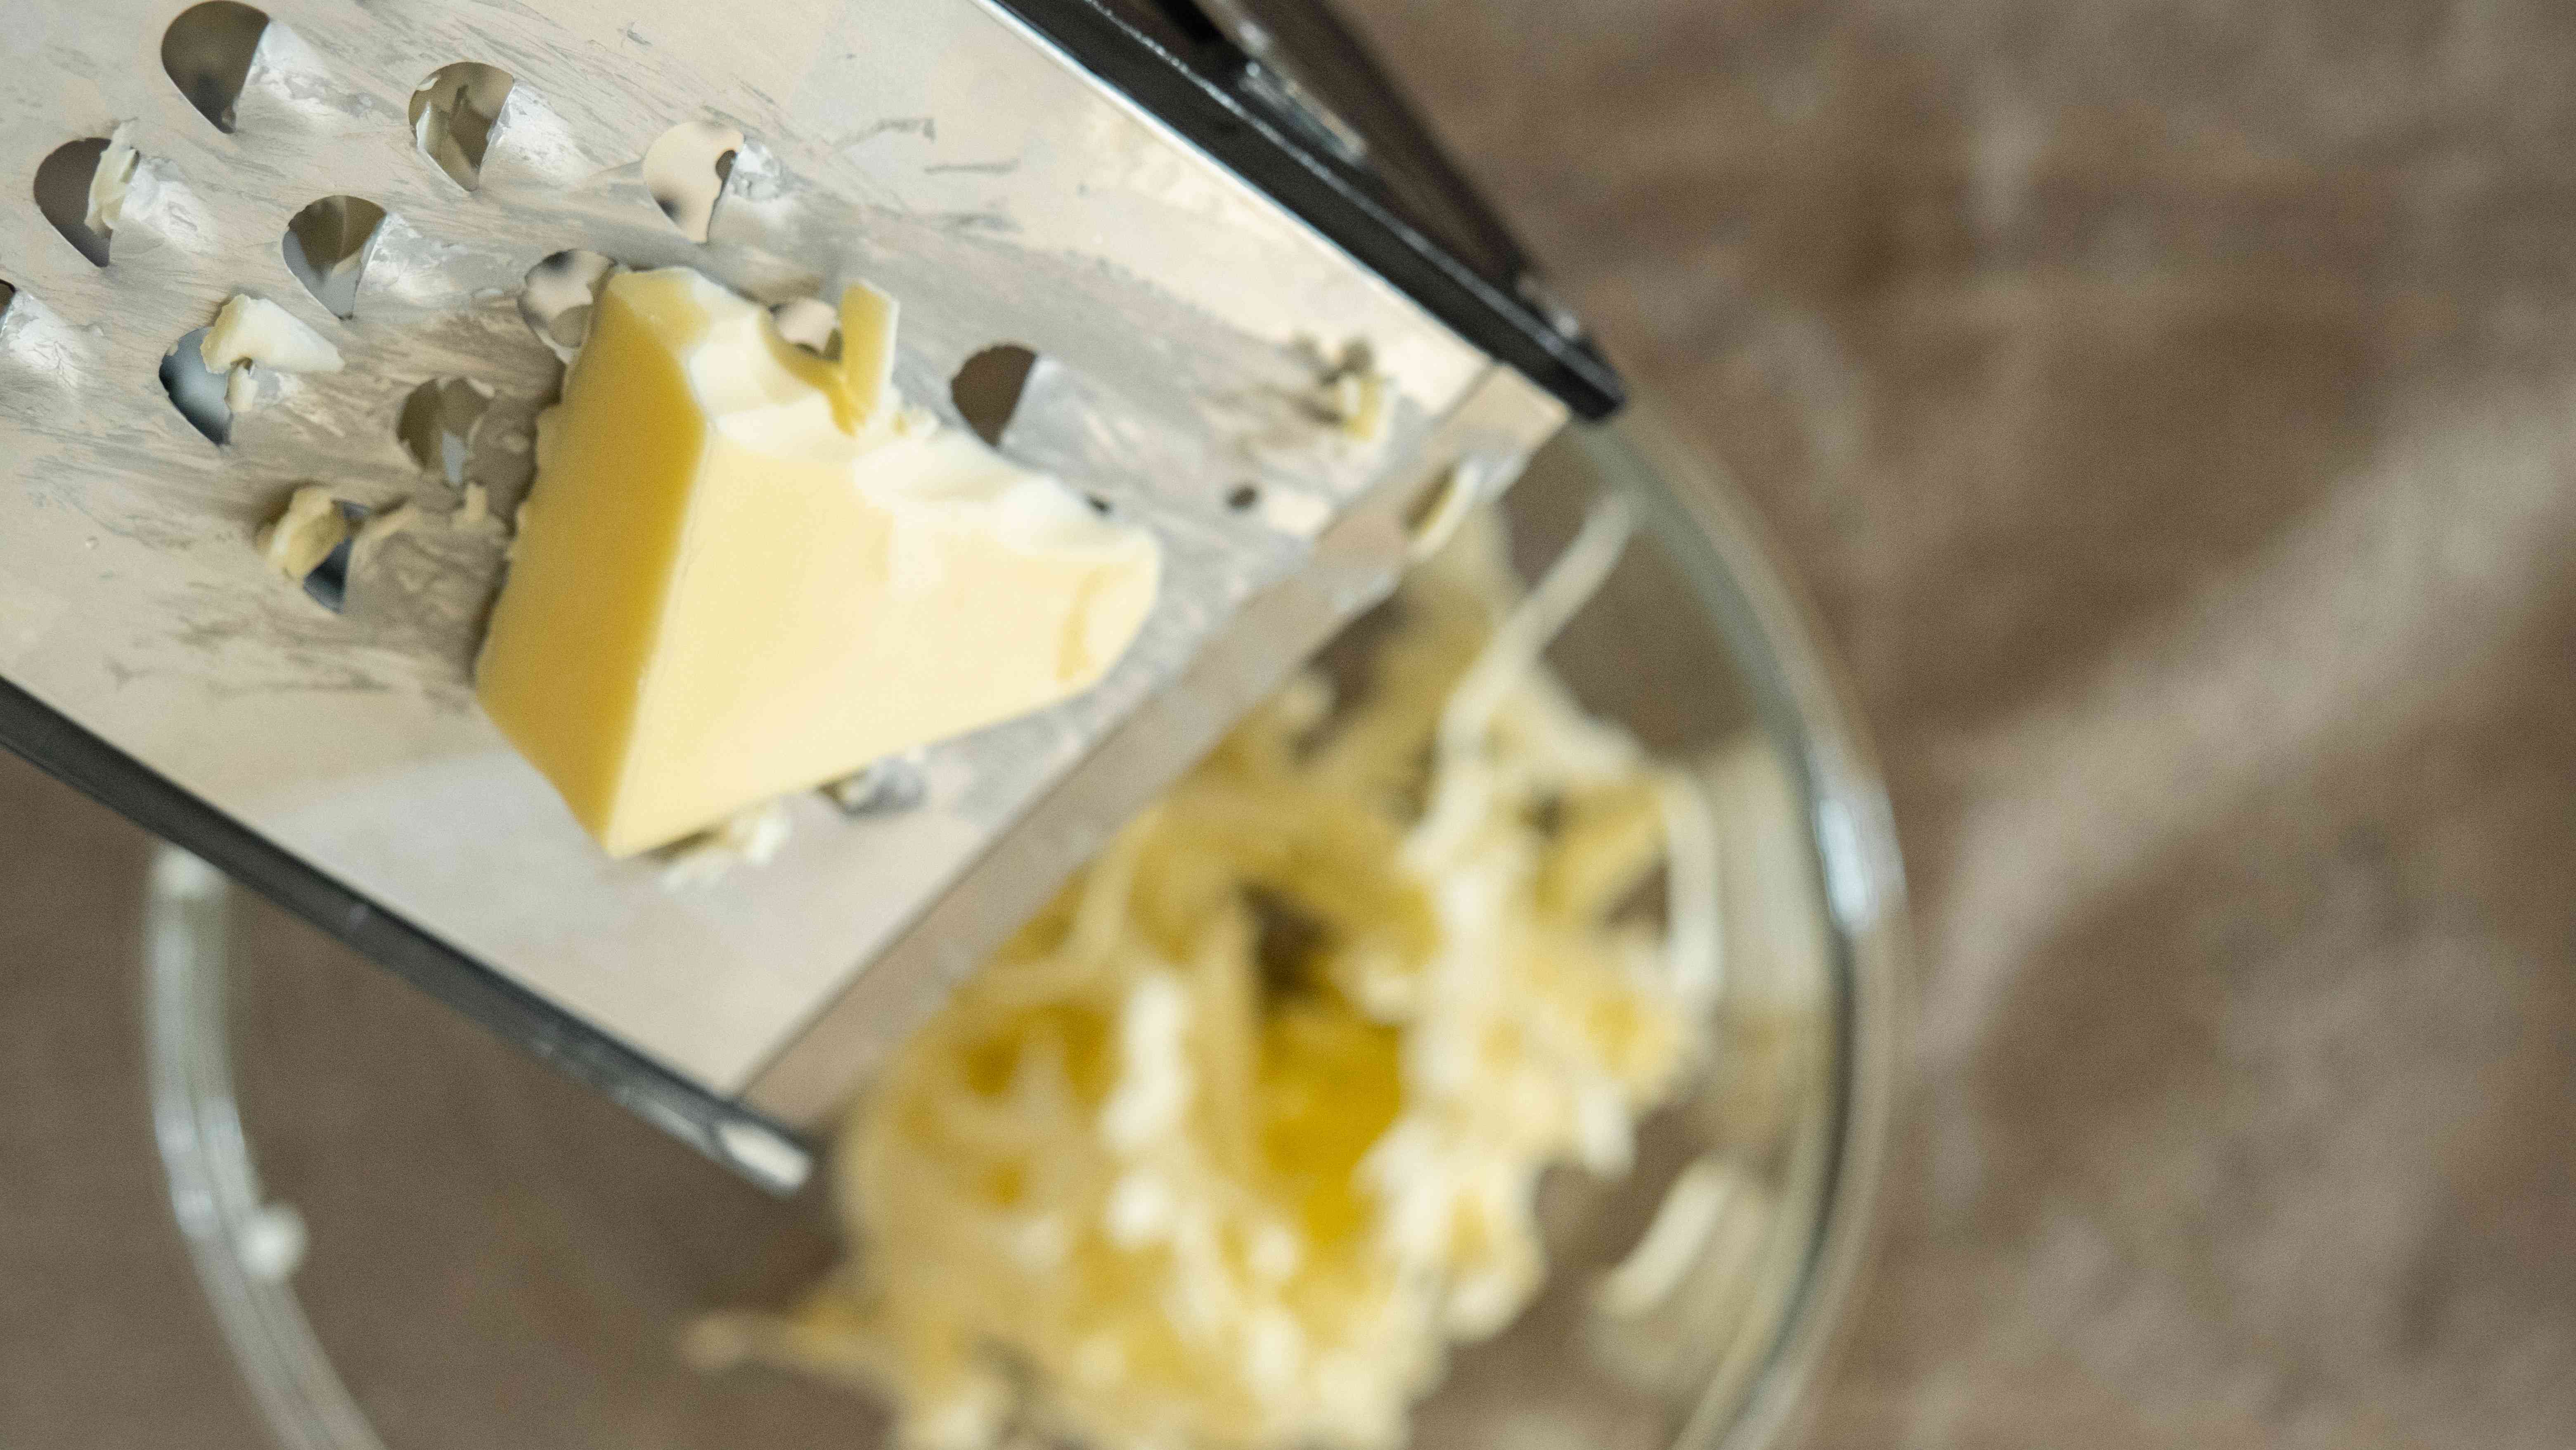 头顶近景:磨碎机将硬黄油切成玻璃碗